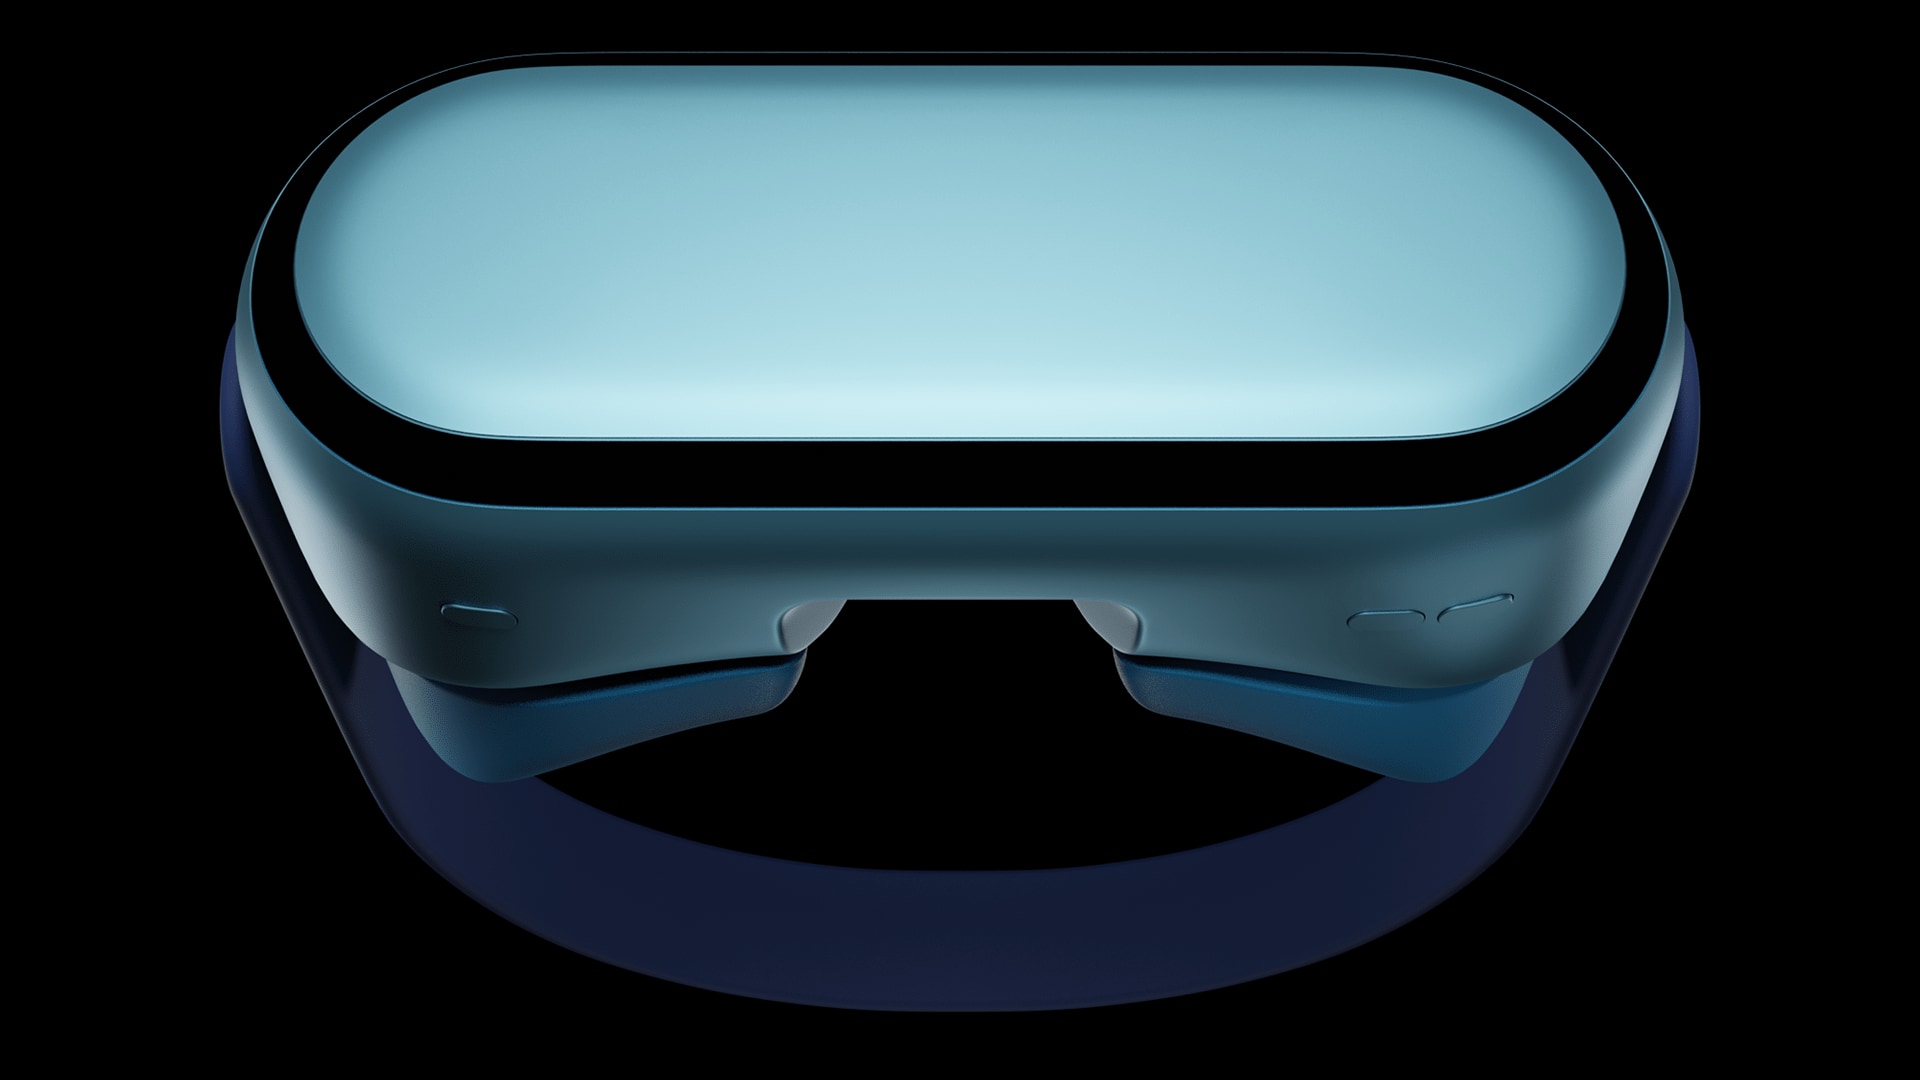 Apple cascos realidad aumentada concepto